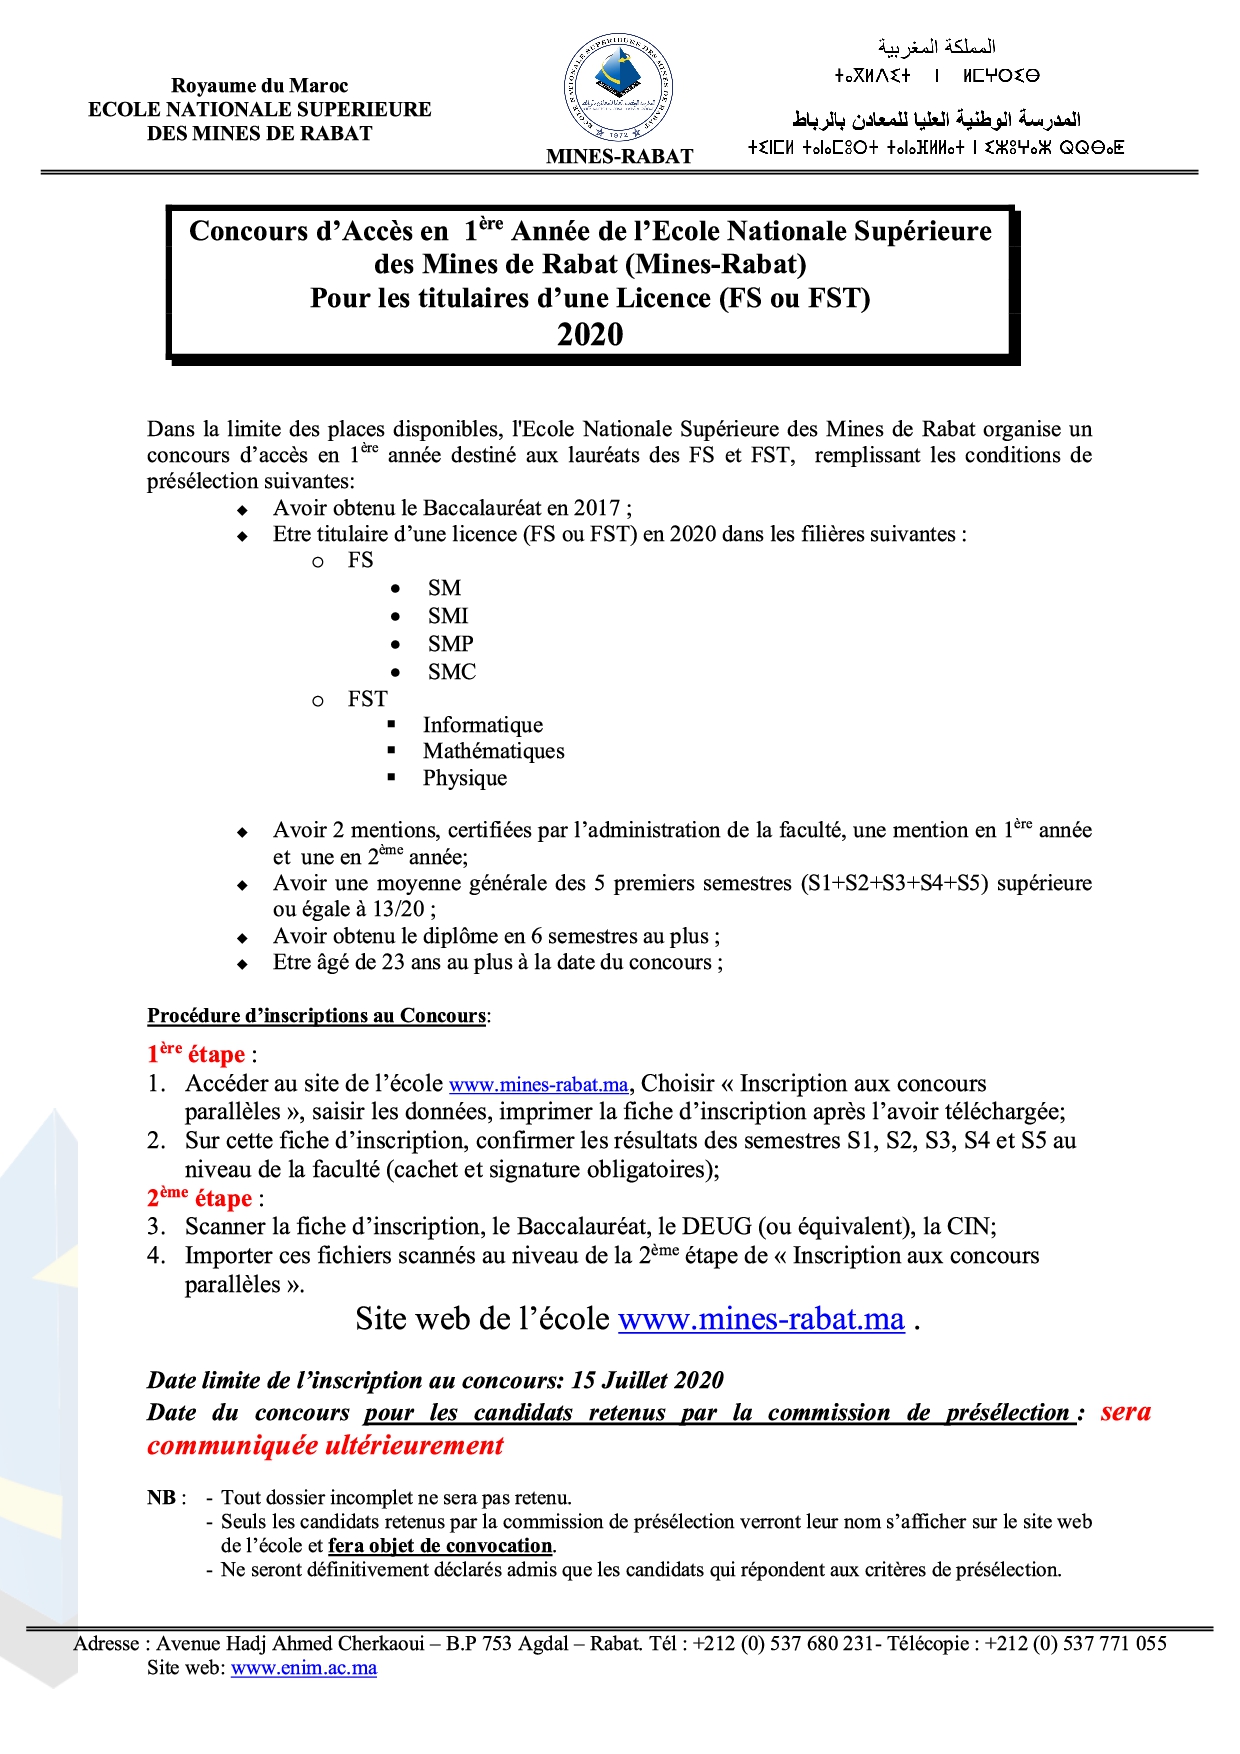 CONDITIONS D'ACCES LICENCE (FS ou FST) de L'Ecole Nationale Supérieure des Mines de Rabat (MINES-RABAT) 2020